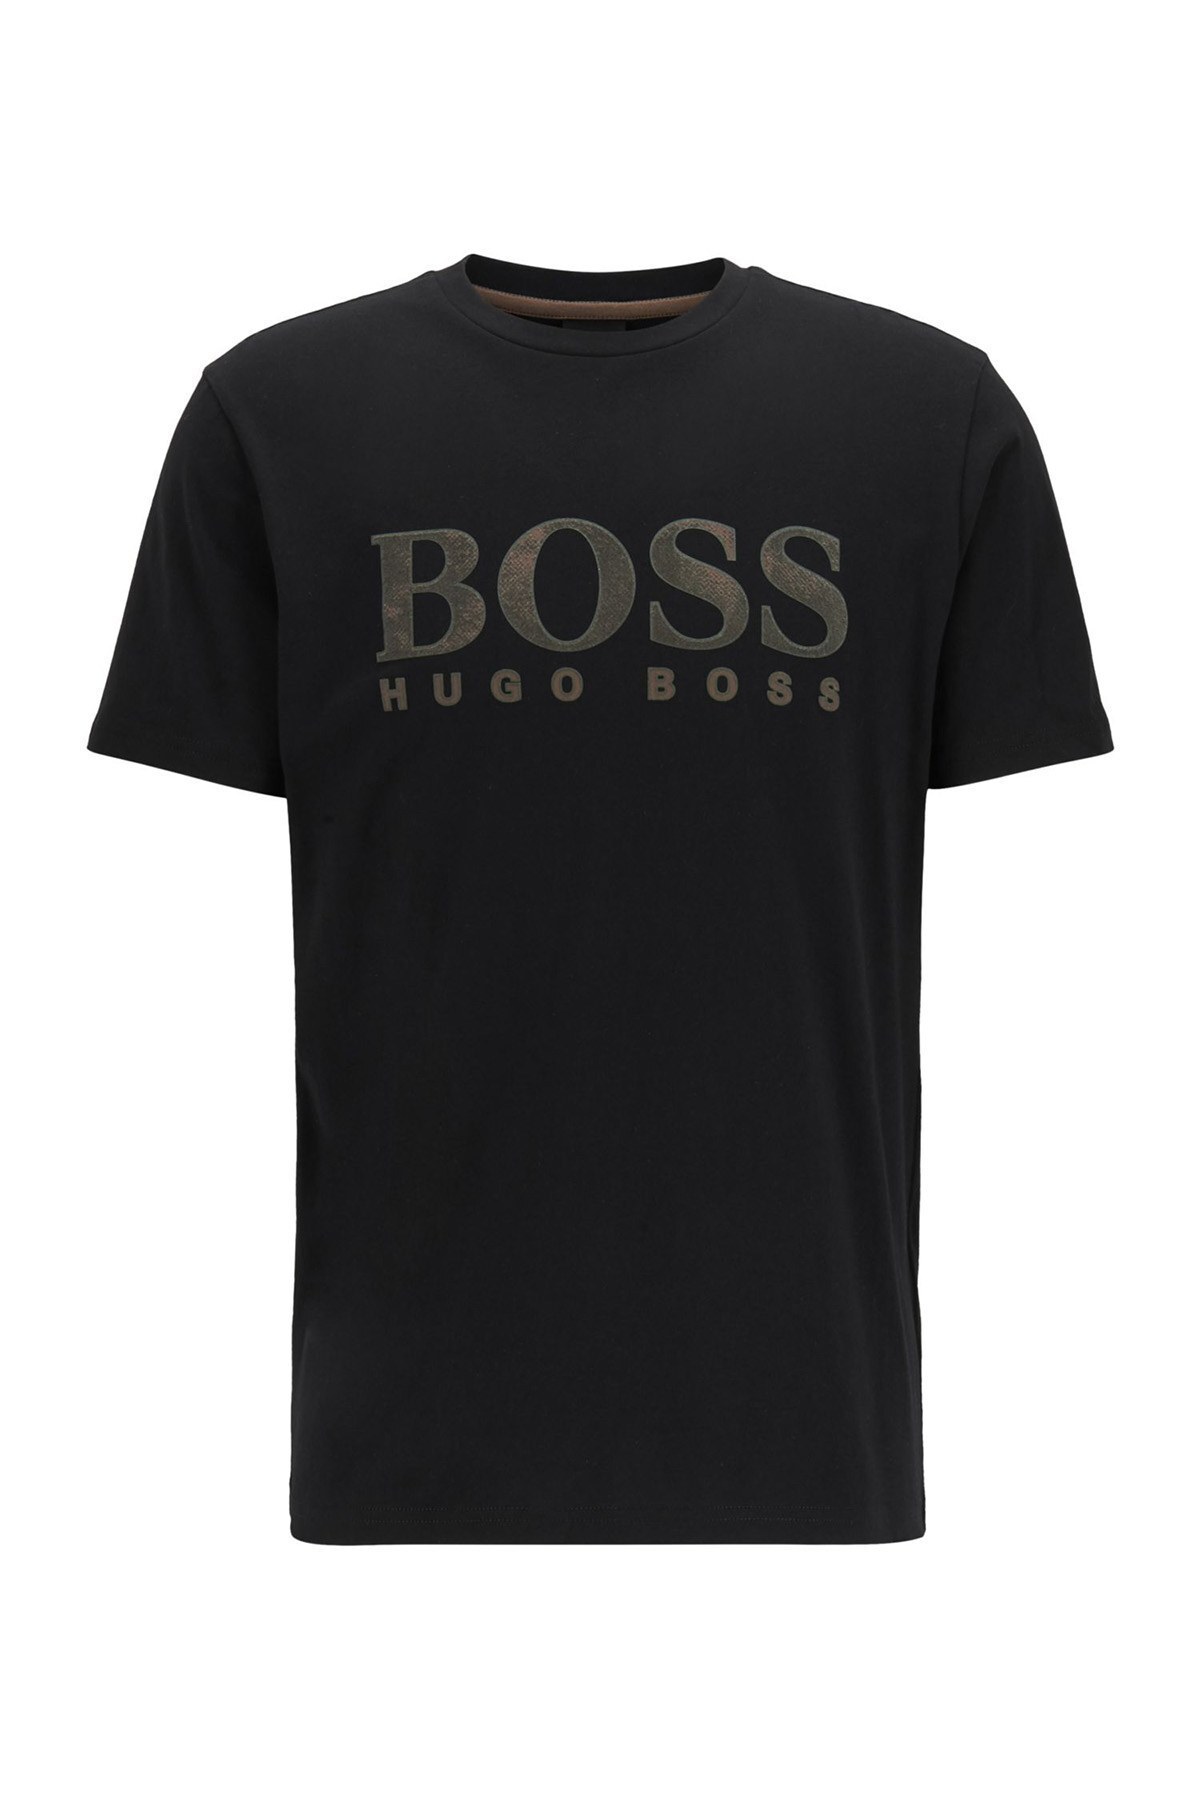 Hugo Boss % 100 Pamuklu Bisiklet Yaka Erkek T Shirt 50450906 001 SİYAH